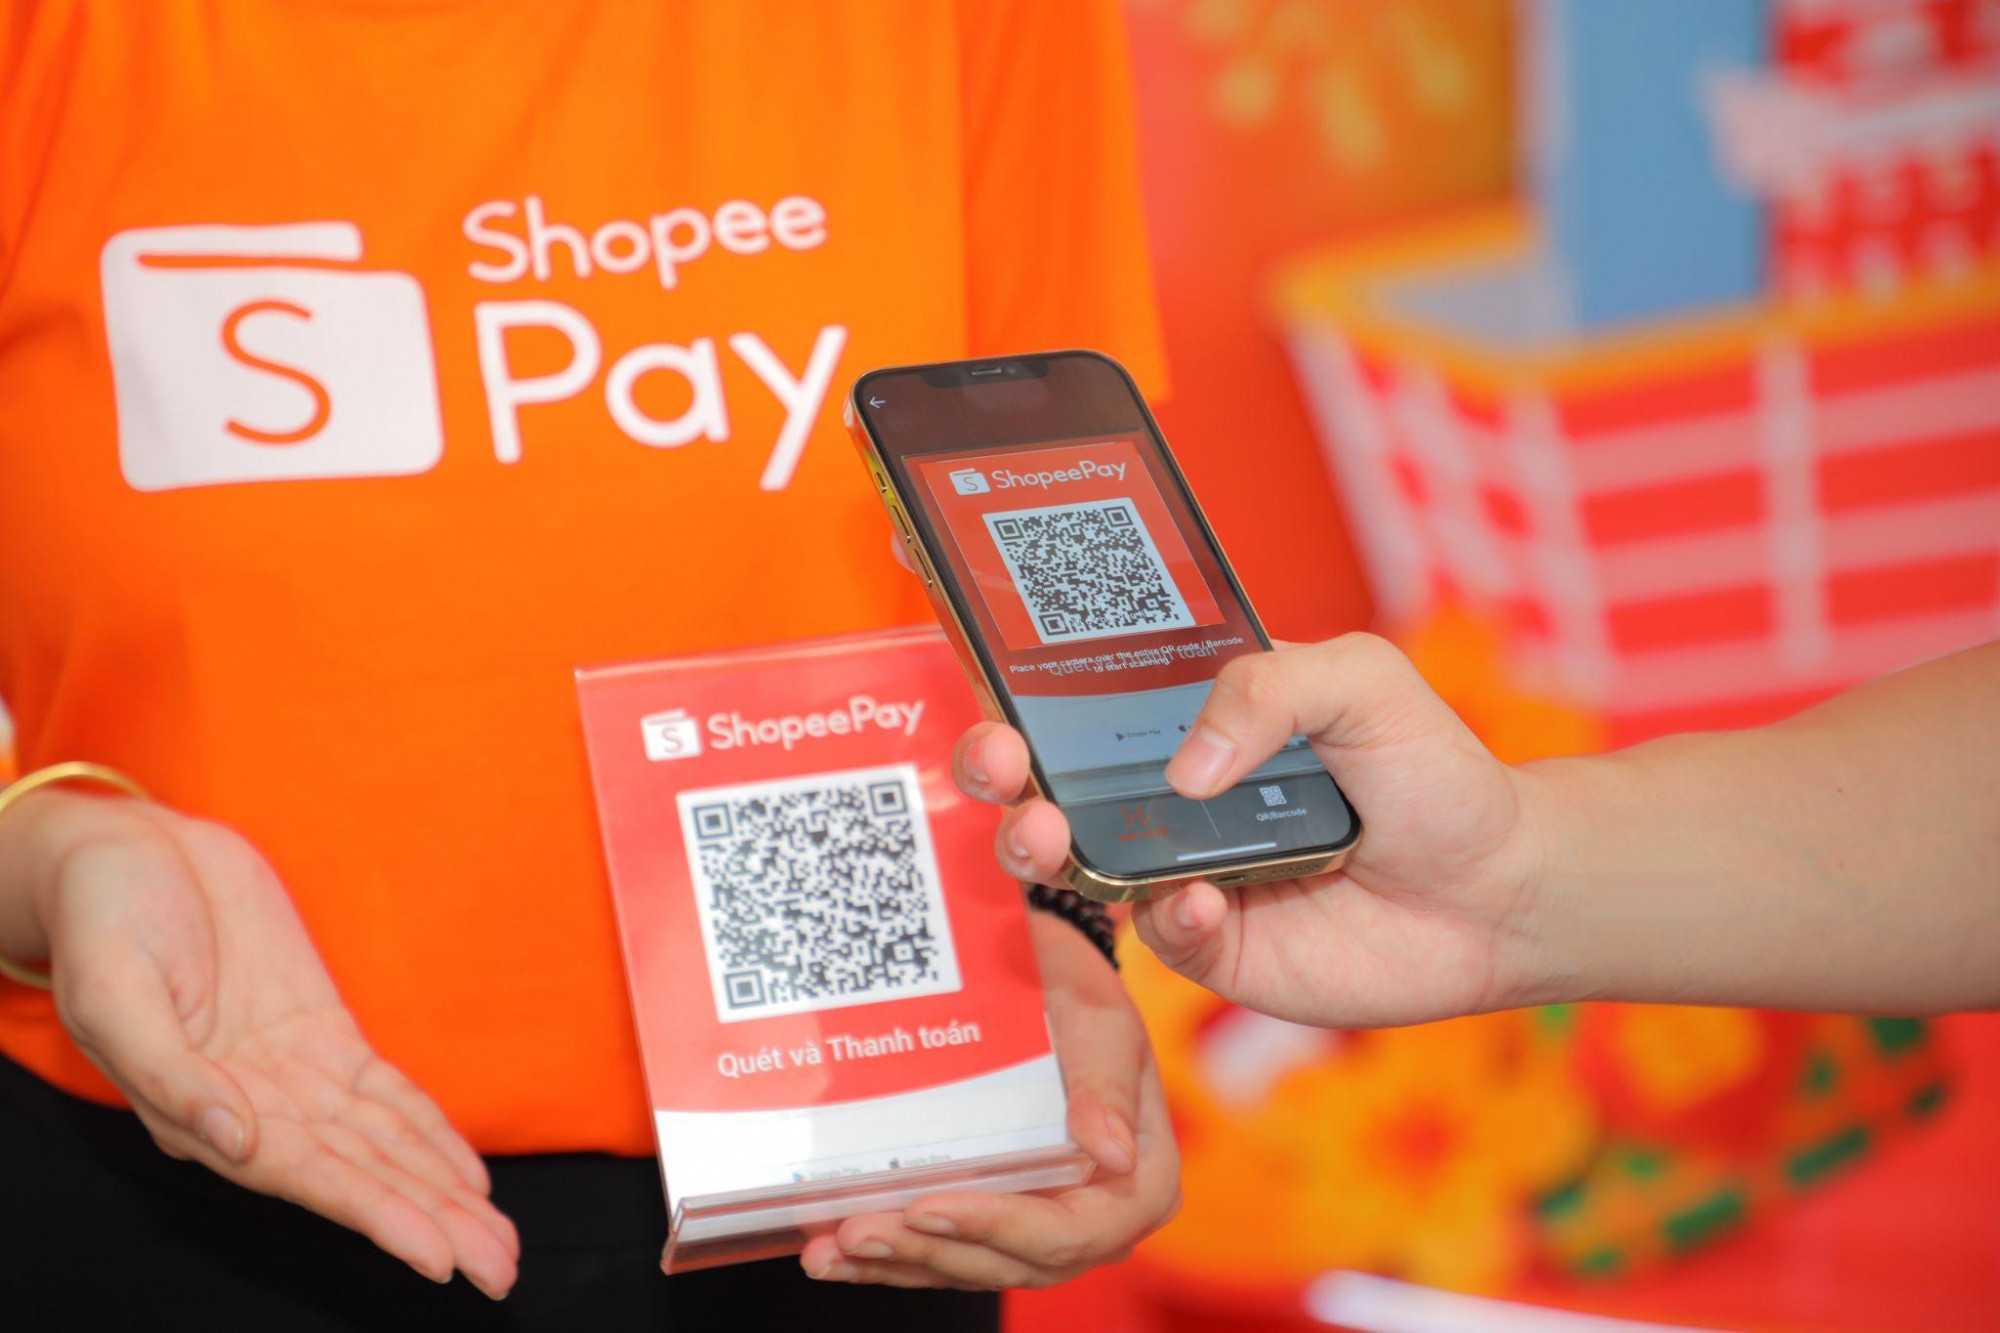 Quét QR Scan & Pay trên ứng dụng Shopee tại Long Châu để được ưu đãi hoàn xu giúp tiết kiệm chi phí hơn